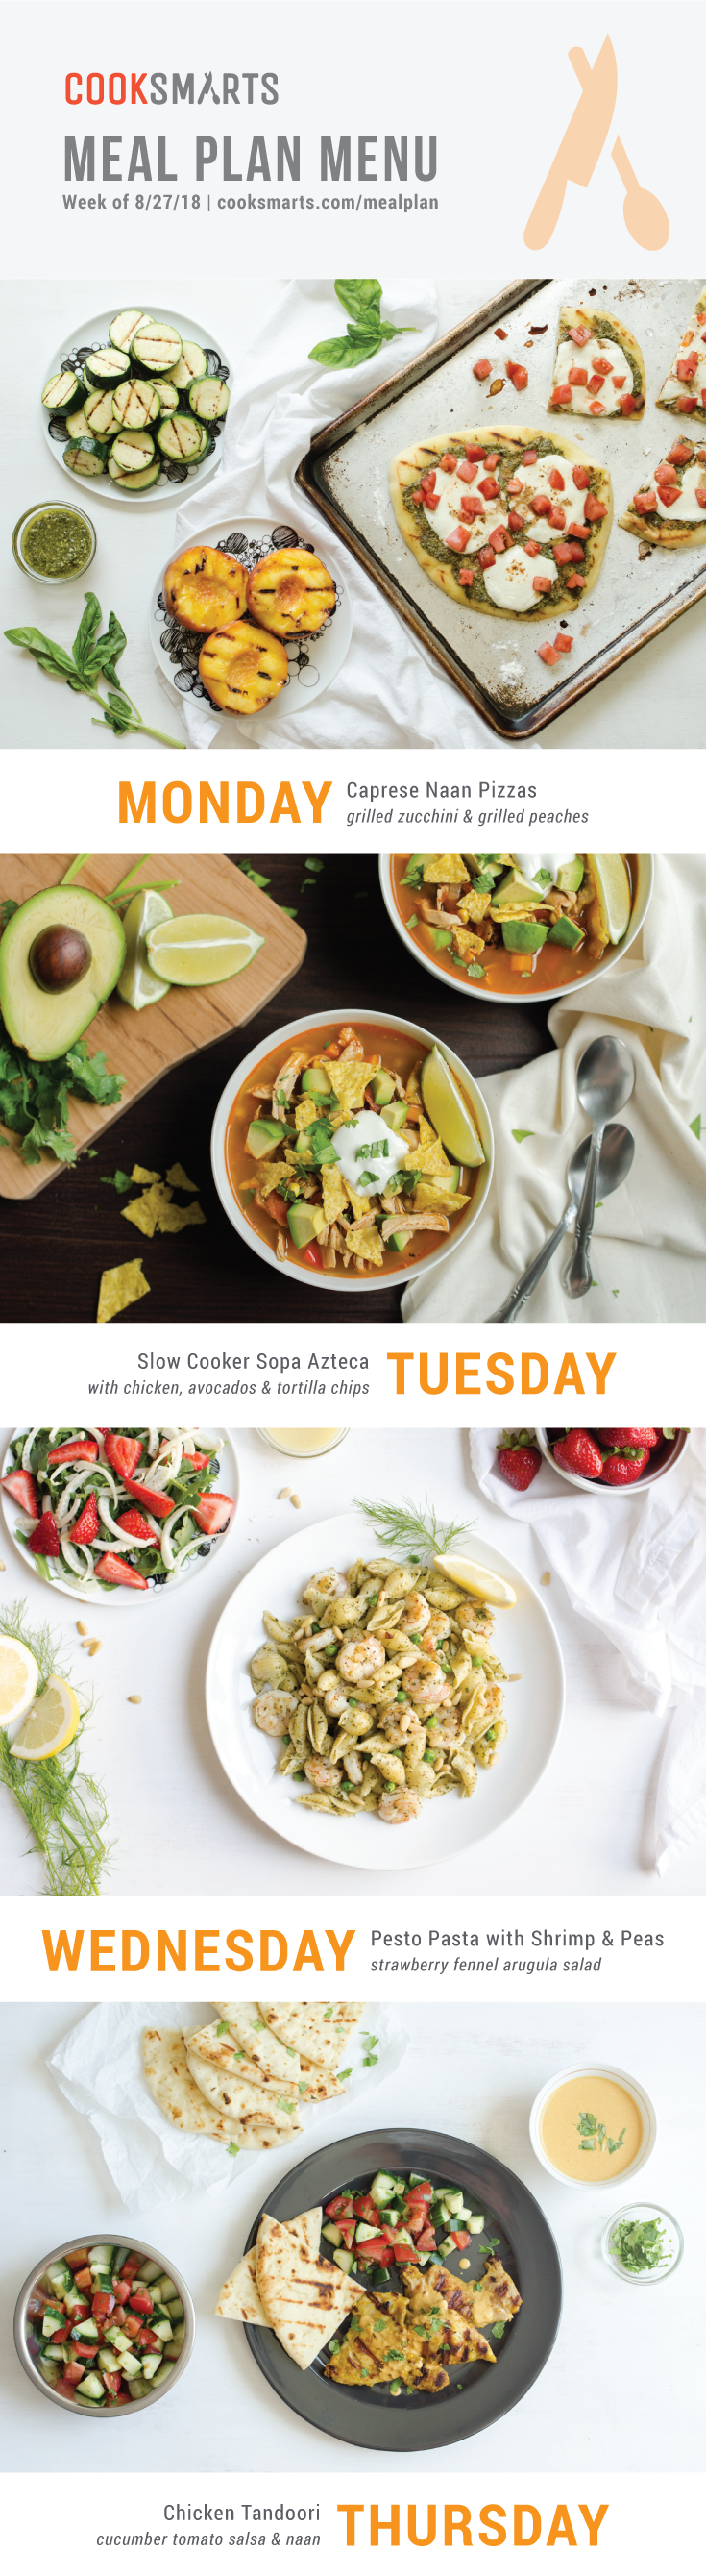 Weekly Meal Planner | Menu for Week of 8/27/18 via Cook Smarts